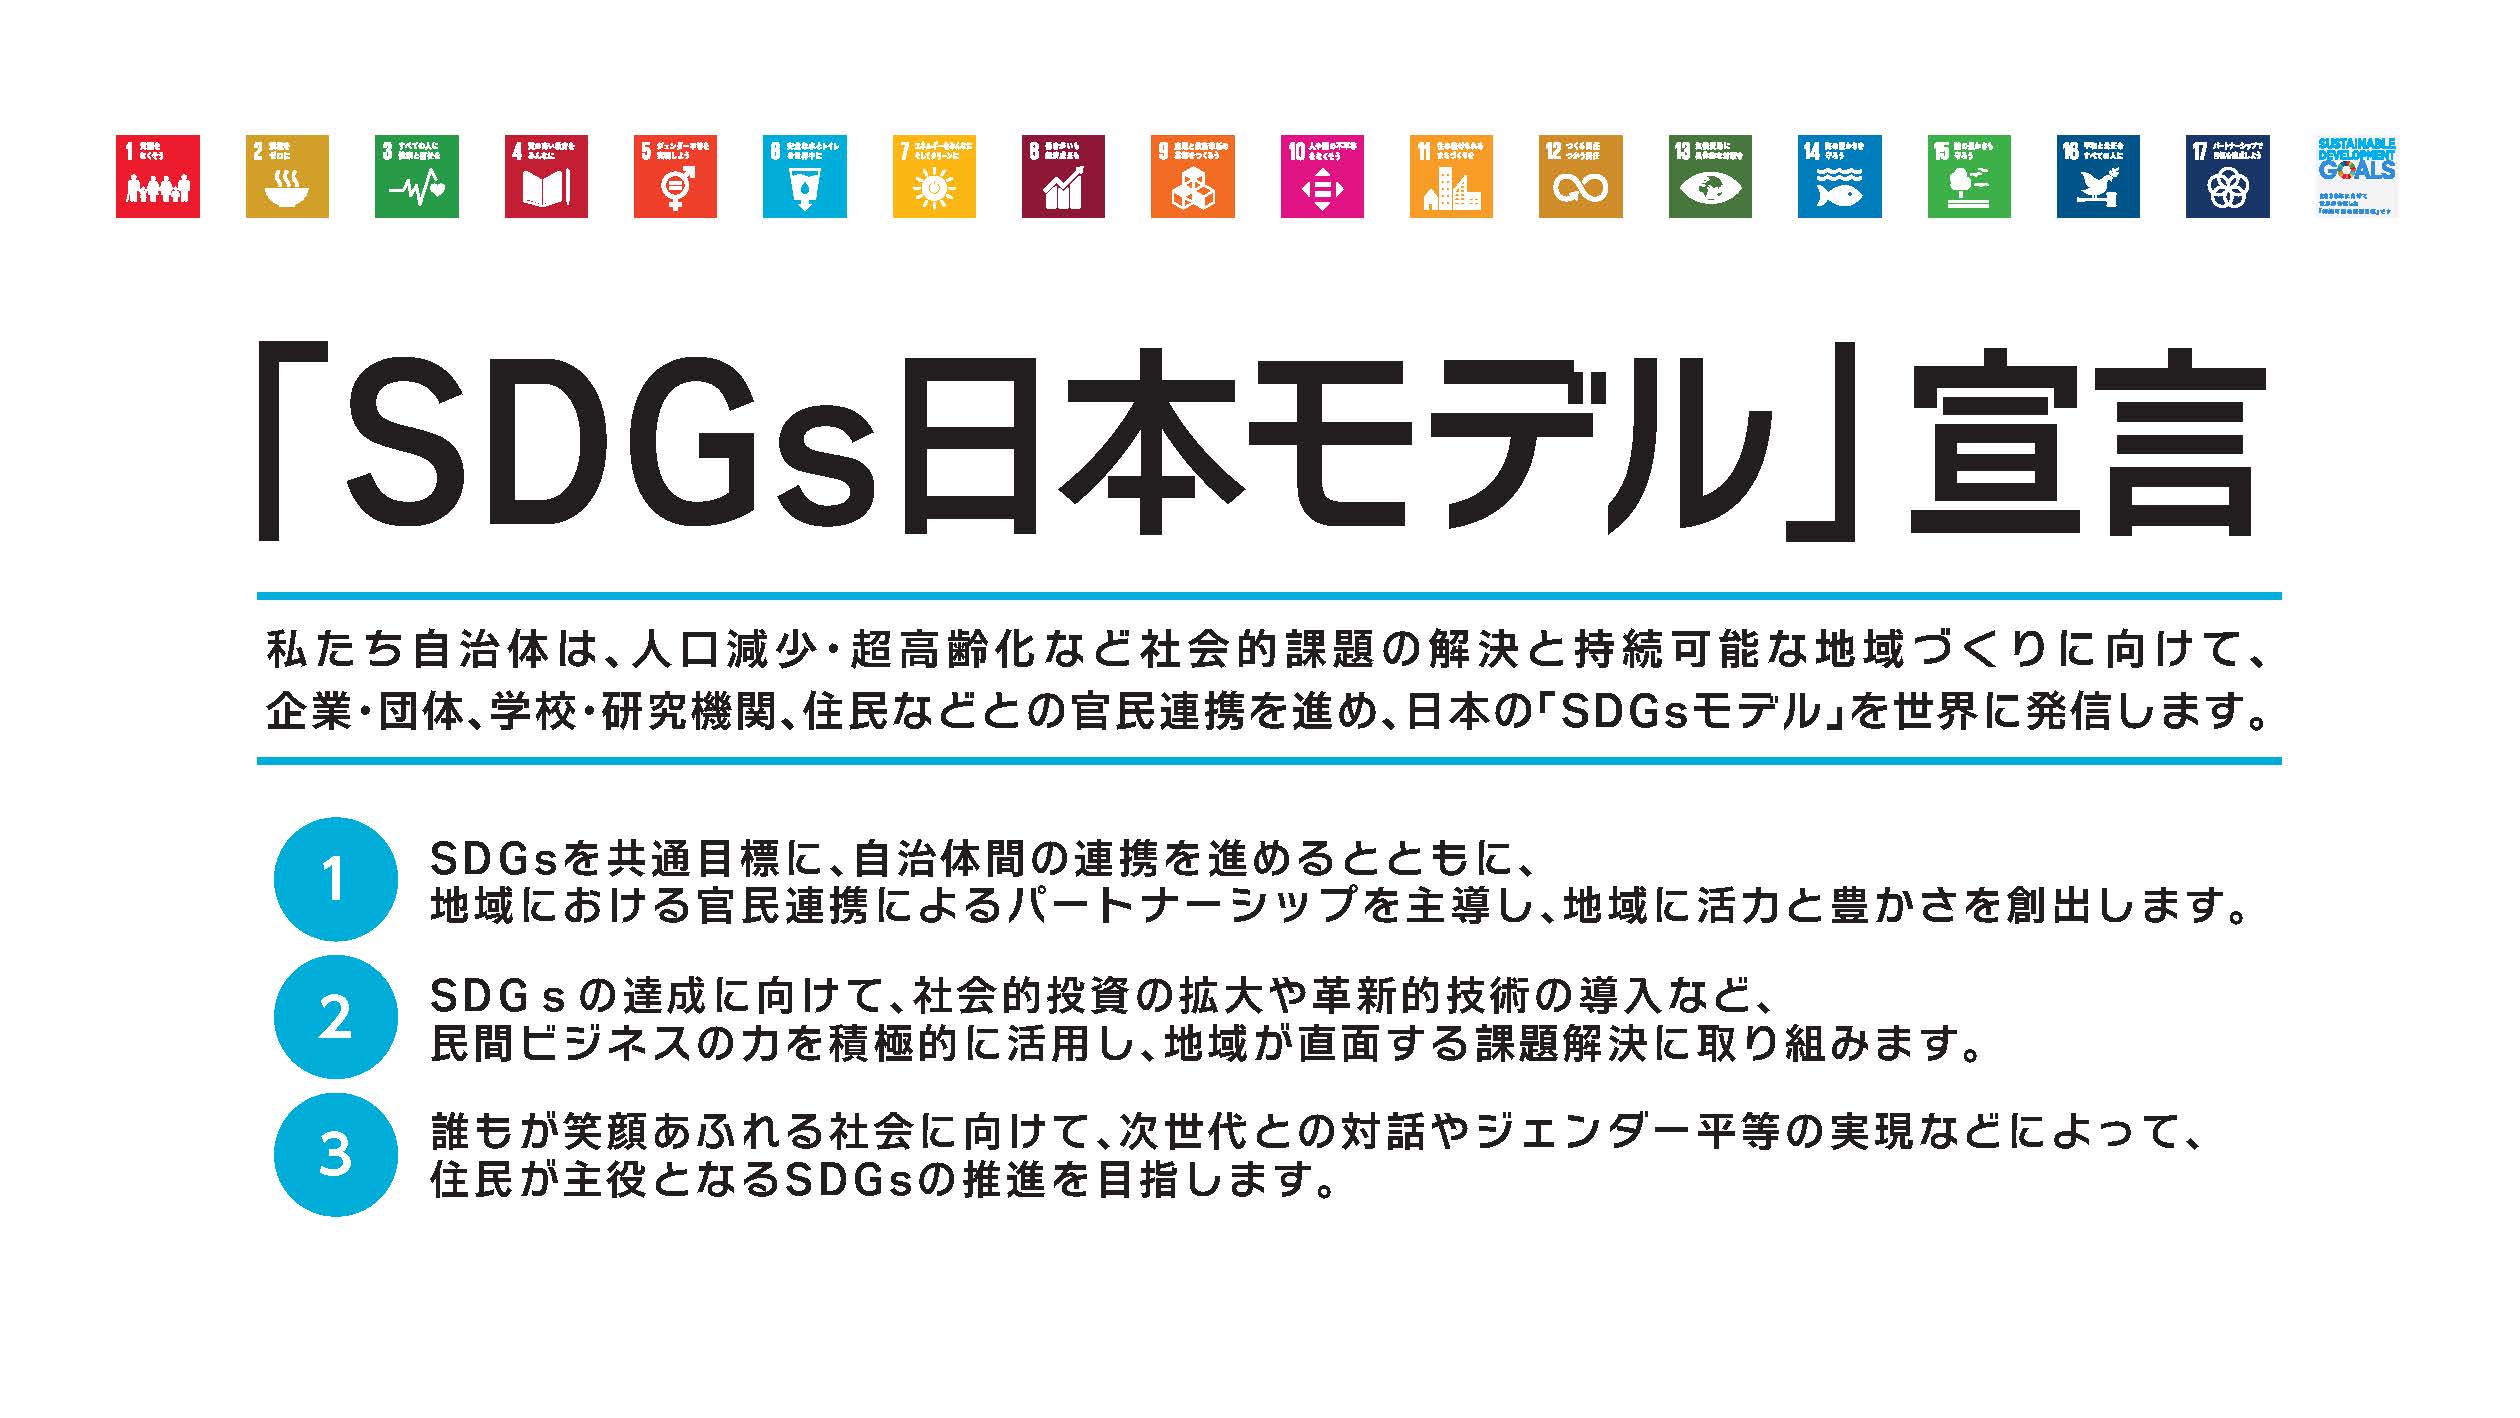 SDGs日本モデル宣言　私たち自治体は、人口減少・超高齢化など社会的課題の解決と持続可能な地域づくりに向けて、企業・団体、学校・研究機関、住民などとの官民連携を進め、日本の「SDGsモデル」を世界に発信します。　1.SDGsを共通目標に、自治体間の連携を進めるとともに、地域における官民連携によるパートナーシップを主導し、地域に豊かさを創出します。　2.SDGsの達成に向けて、社会的投資の拡大や革新的技術の導入など、民間ビジネスの力を積極的に活用し、地域が直面する課題解決に取り組みます。　3.誰もが笑顔あふれる社会に向けて、次世代との対話やジェンダー平等の実現などによって、住民が主役となるSDGsの推進を目指します。